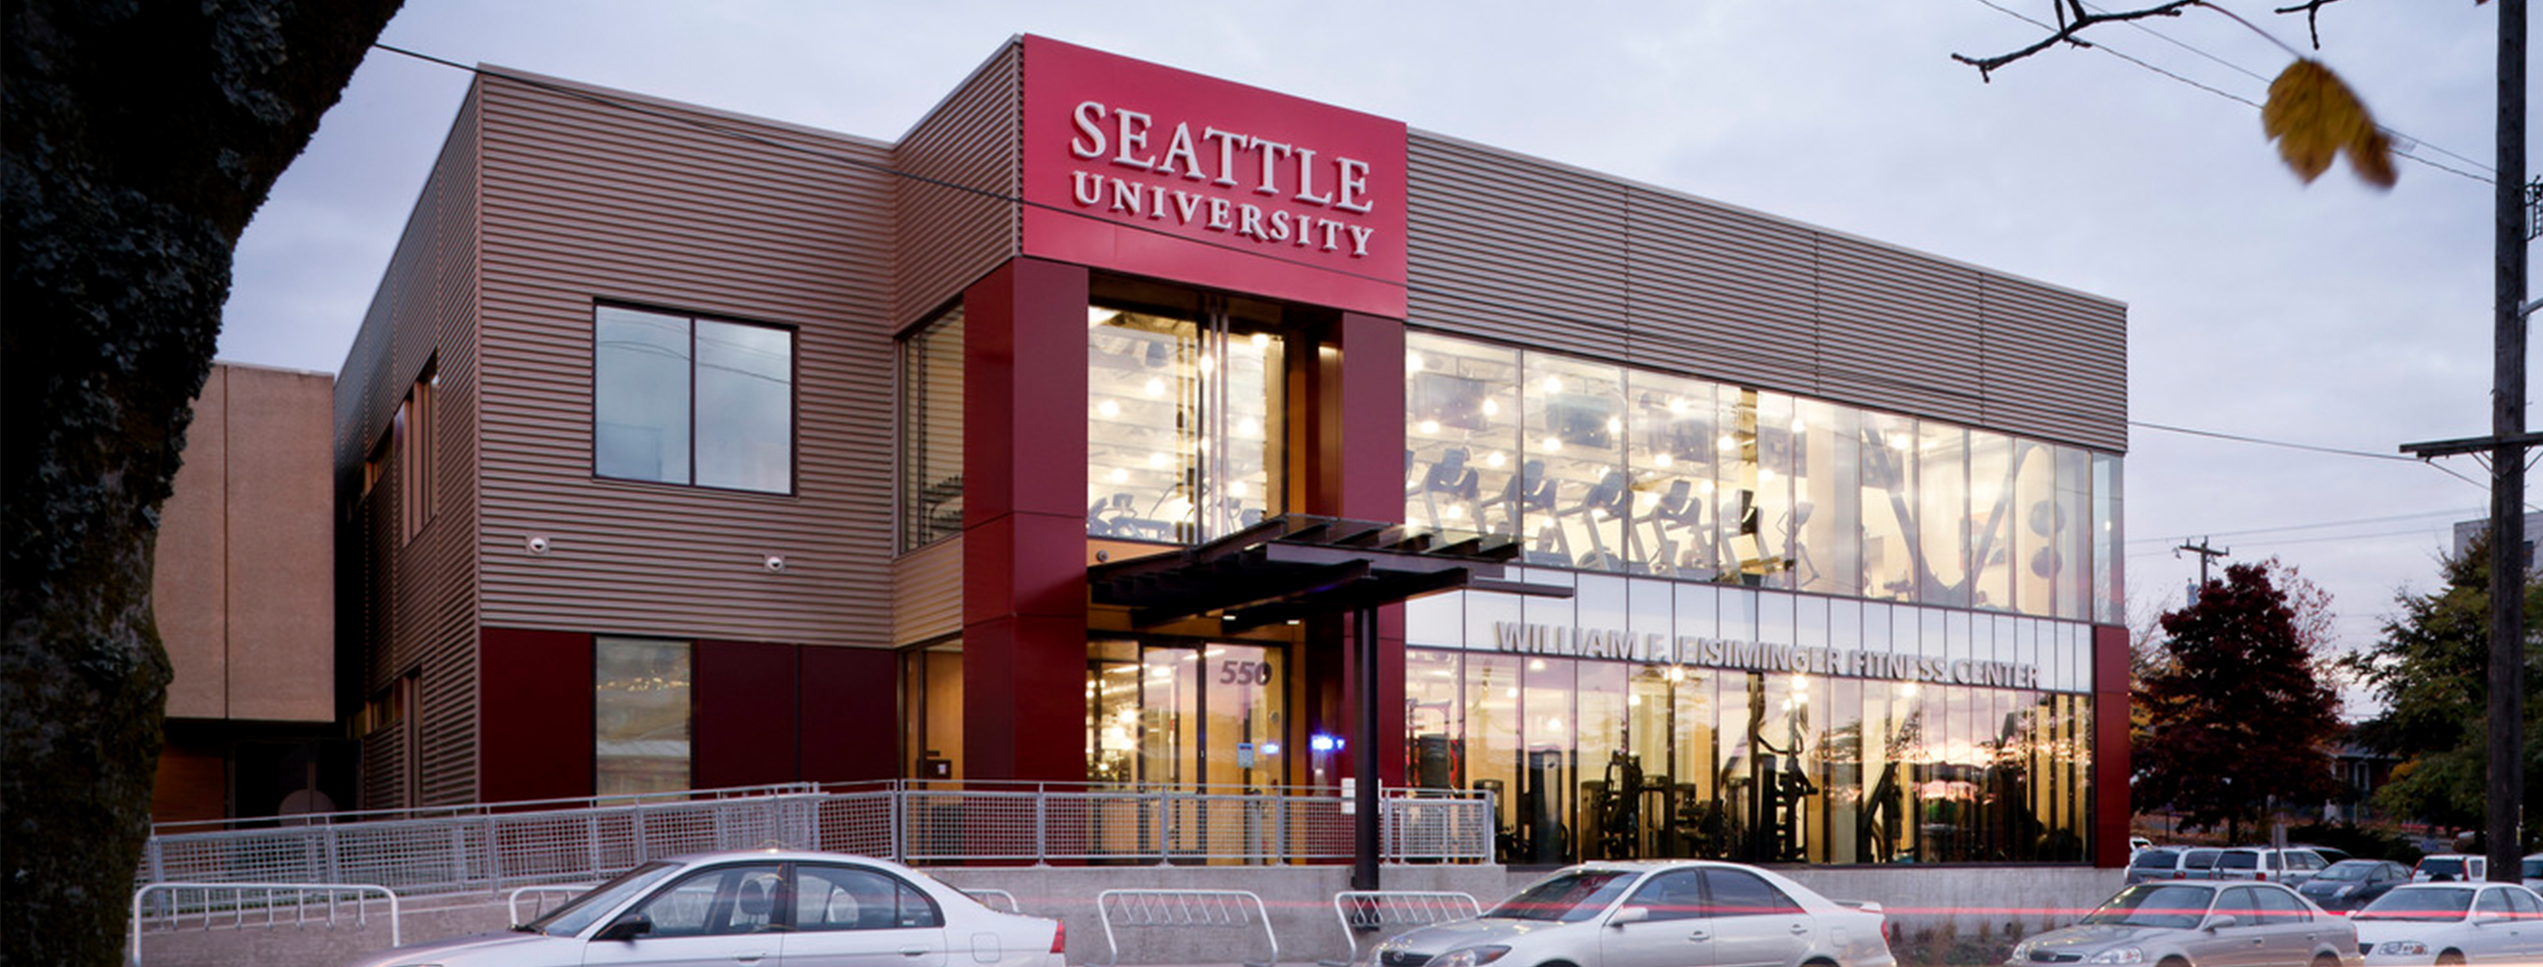 Seattle University William F. Eisiminger Fitness Center 